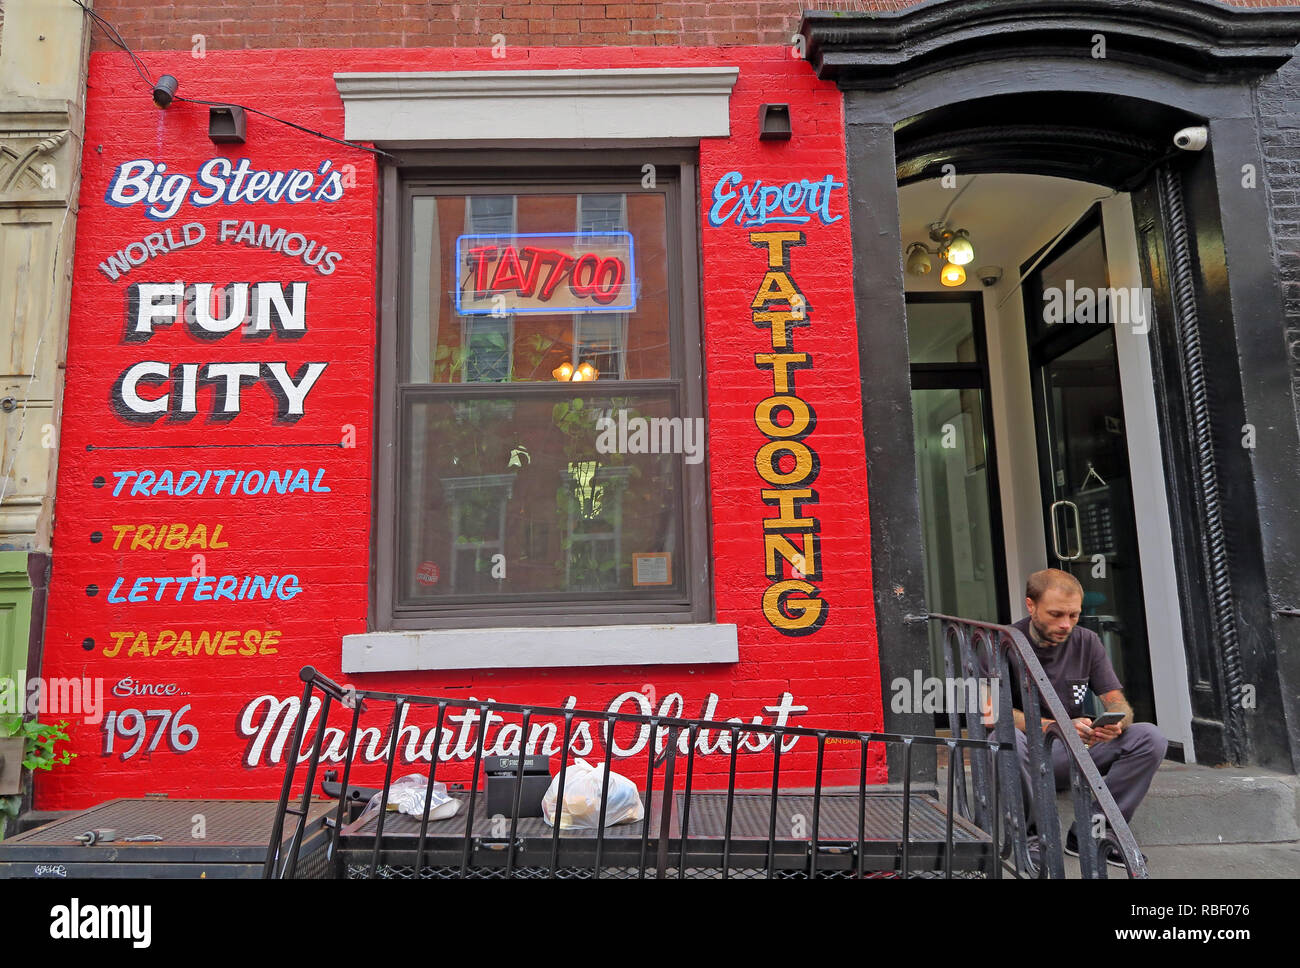 Big Steves, famosa città del divertimento, esperto di tatuaggio,tattooist, 94 St segna il passo, East Village, Manhattan, New York, NY, STATI UNITI D'AMERICA Foto Stock